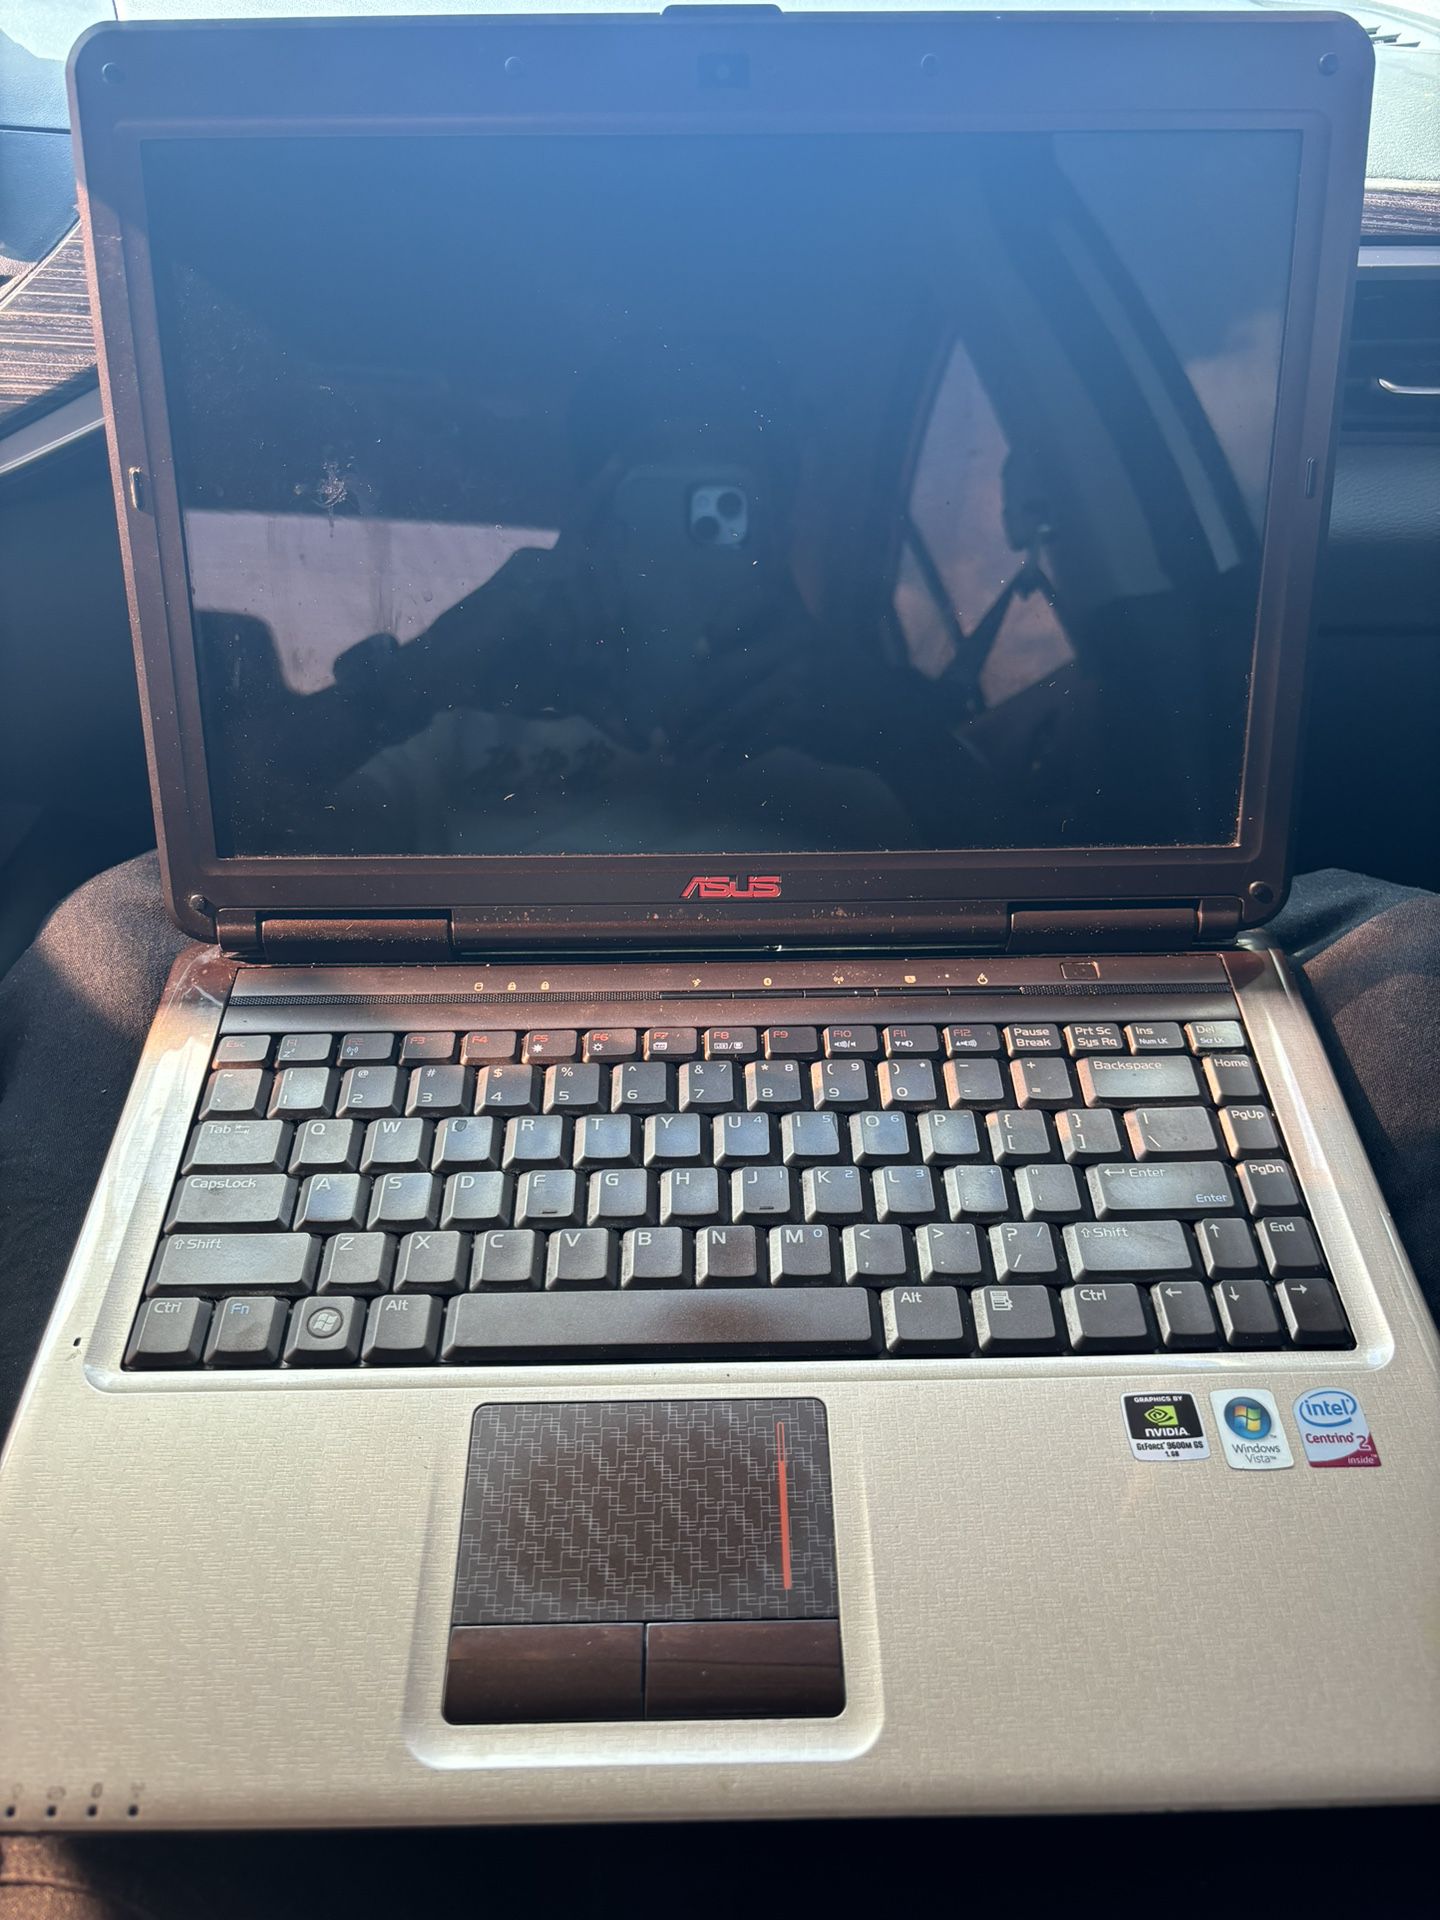 Asus Laptop $40